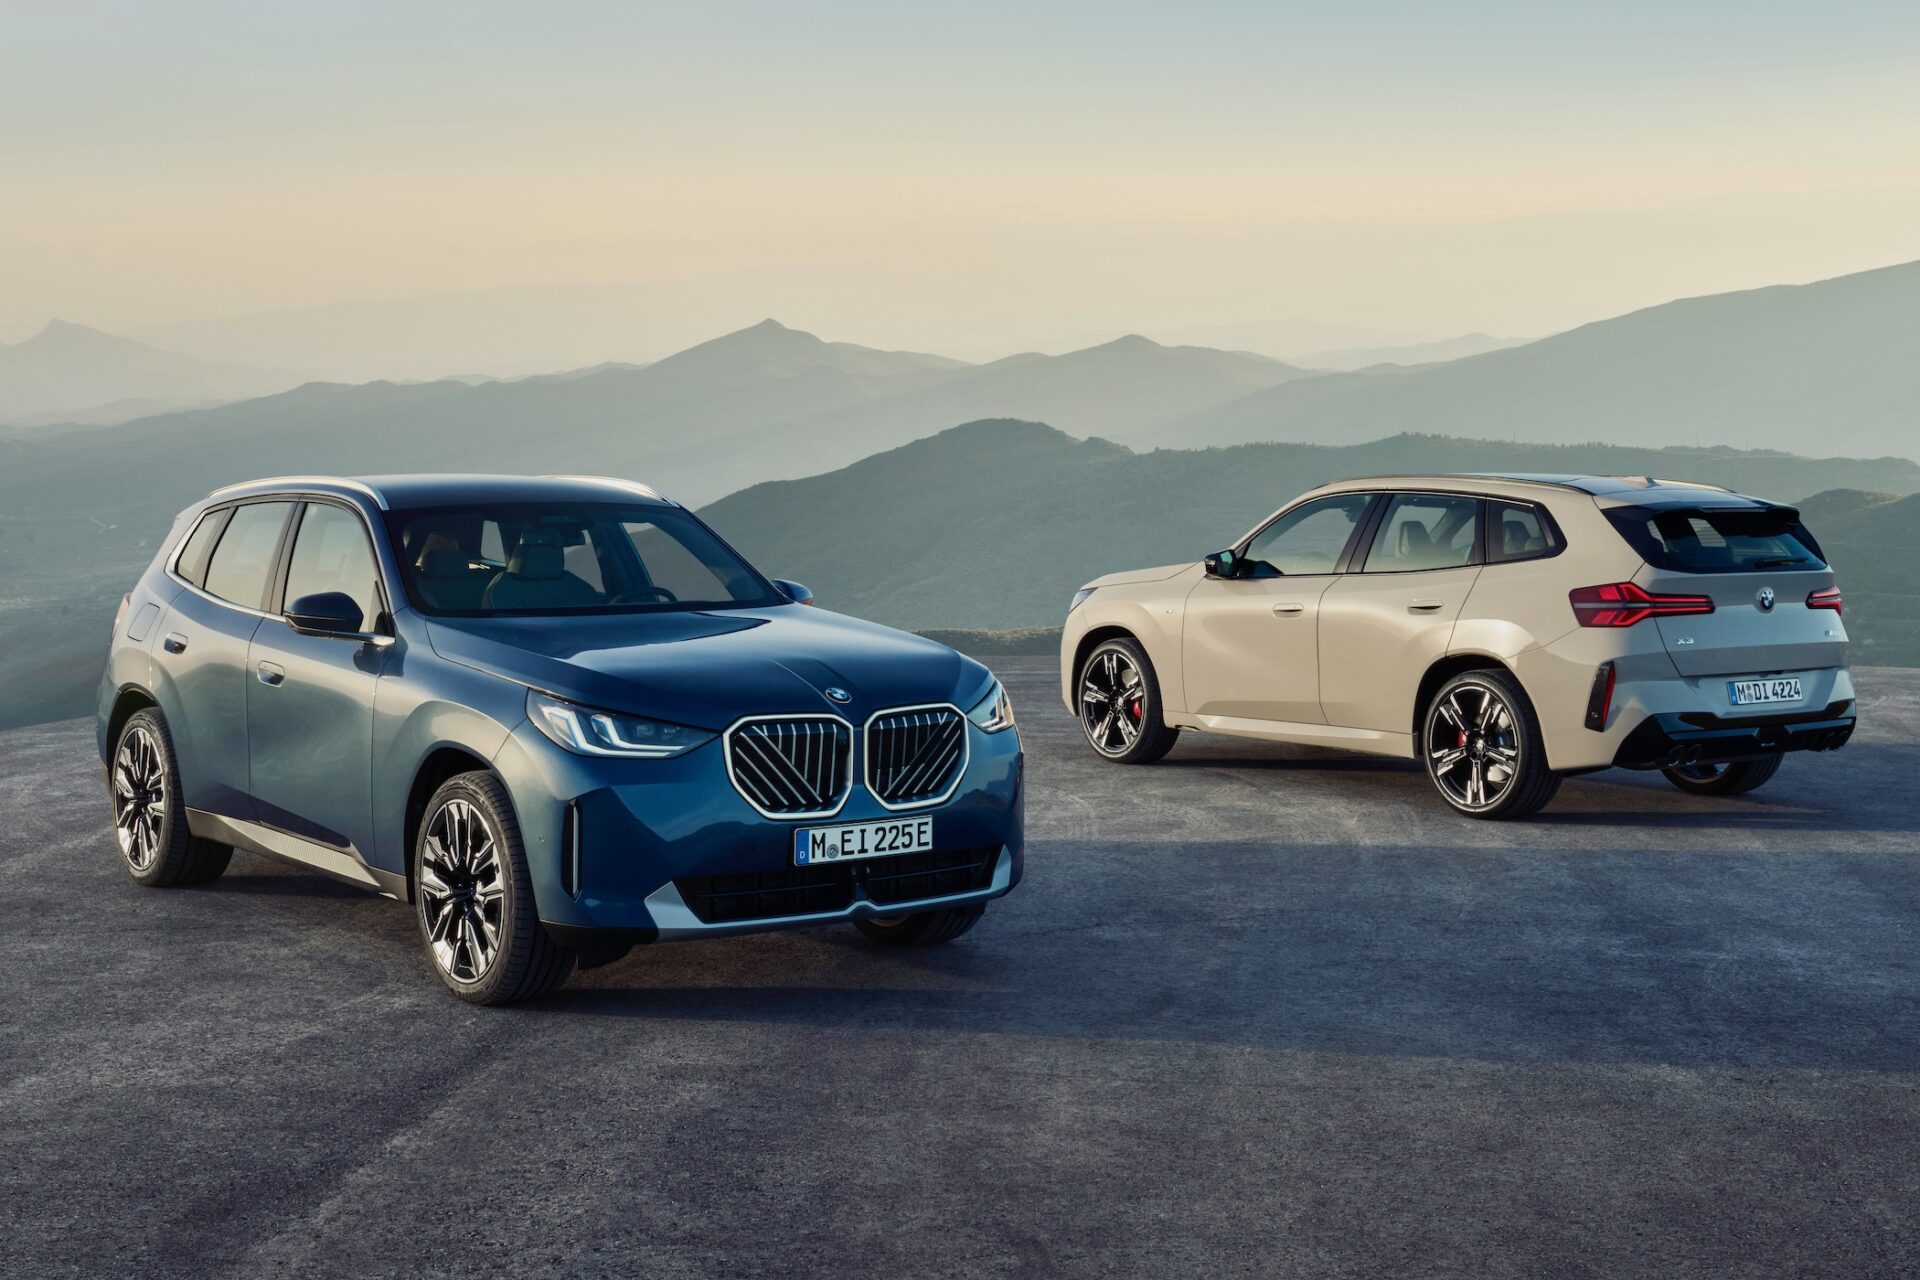 Två BMW SUV , en blå och en beige, står parkerade på en väg med berg i bakgrunden.